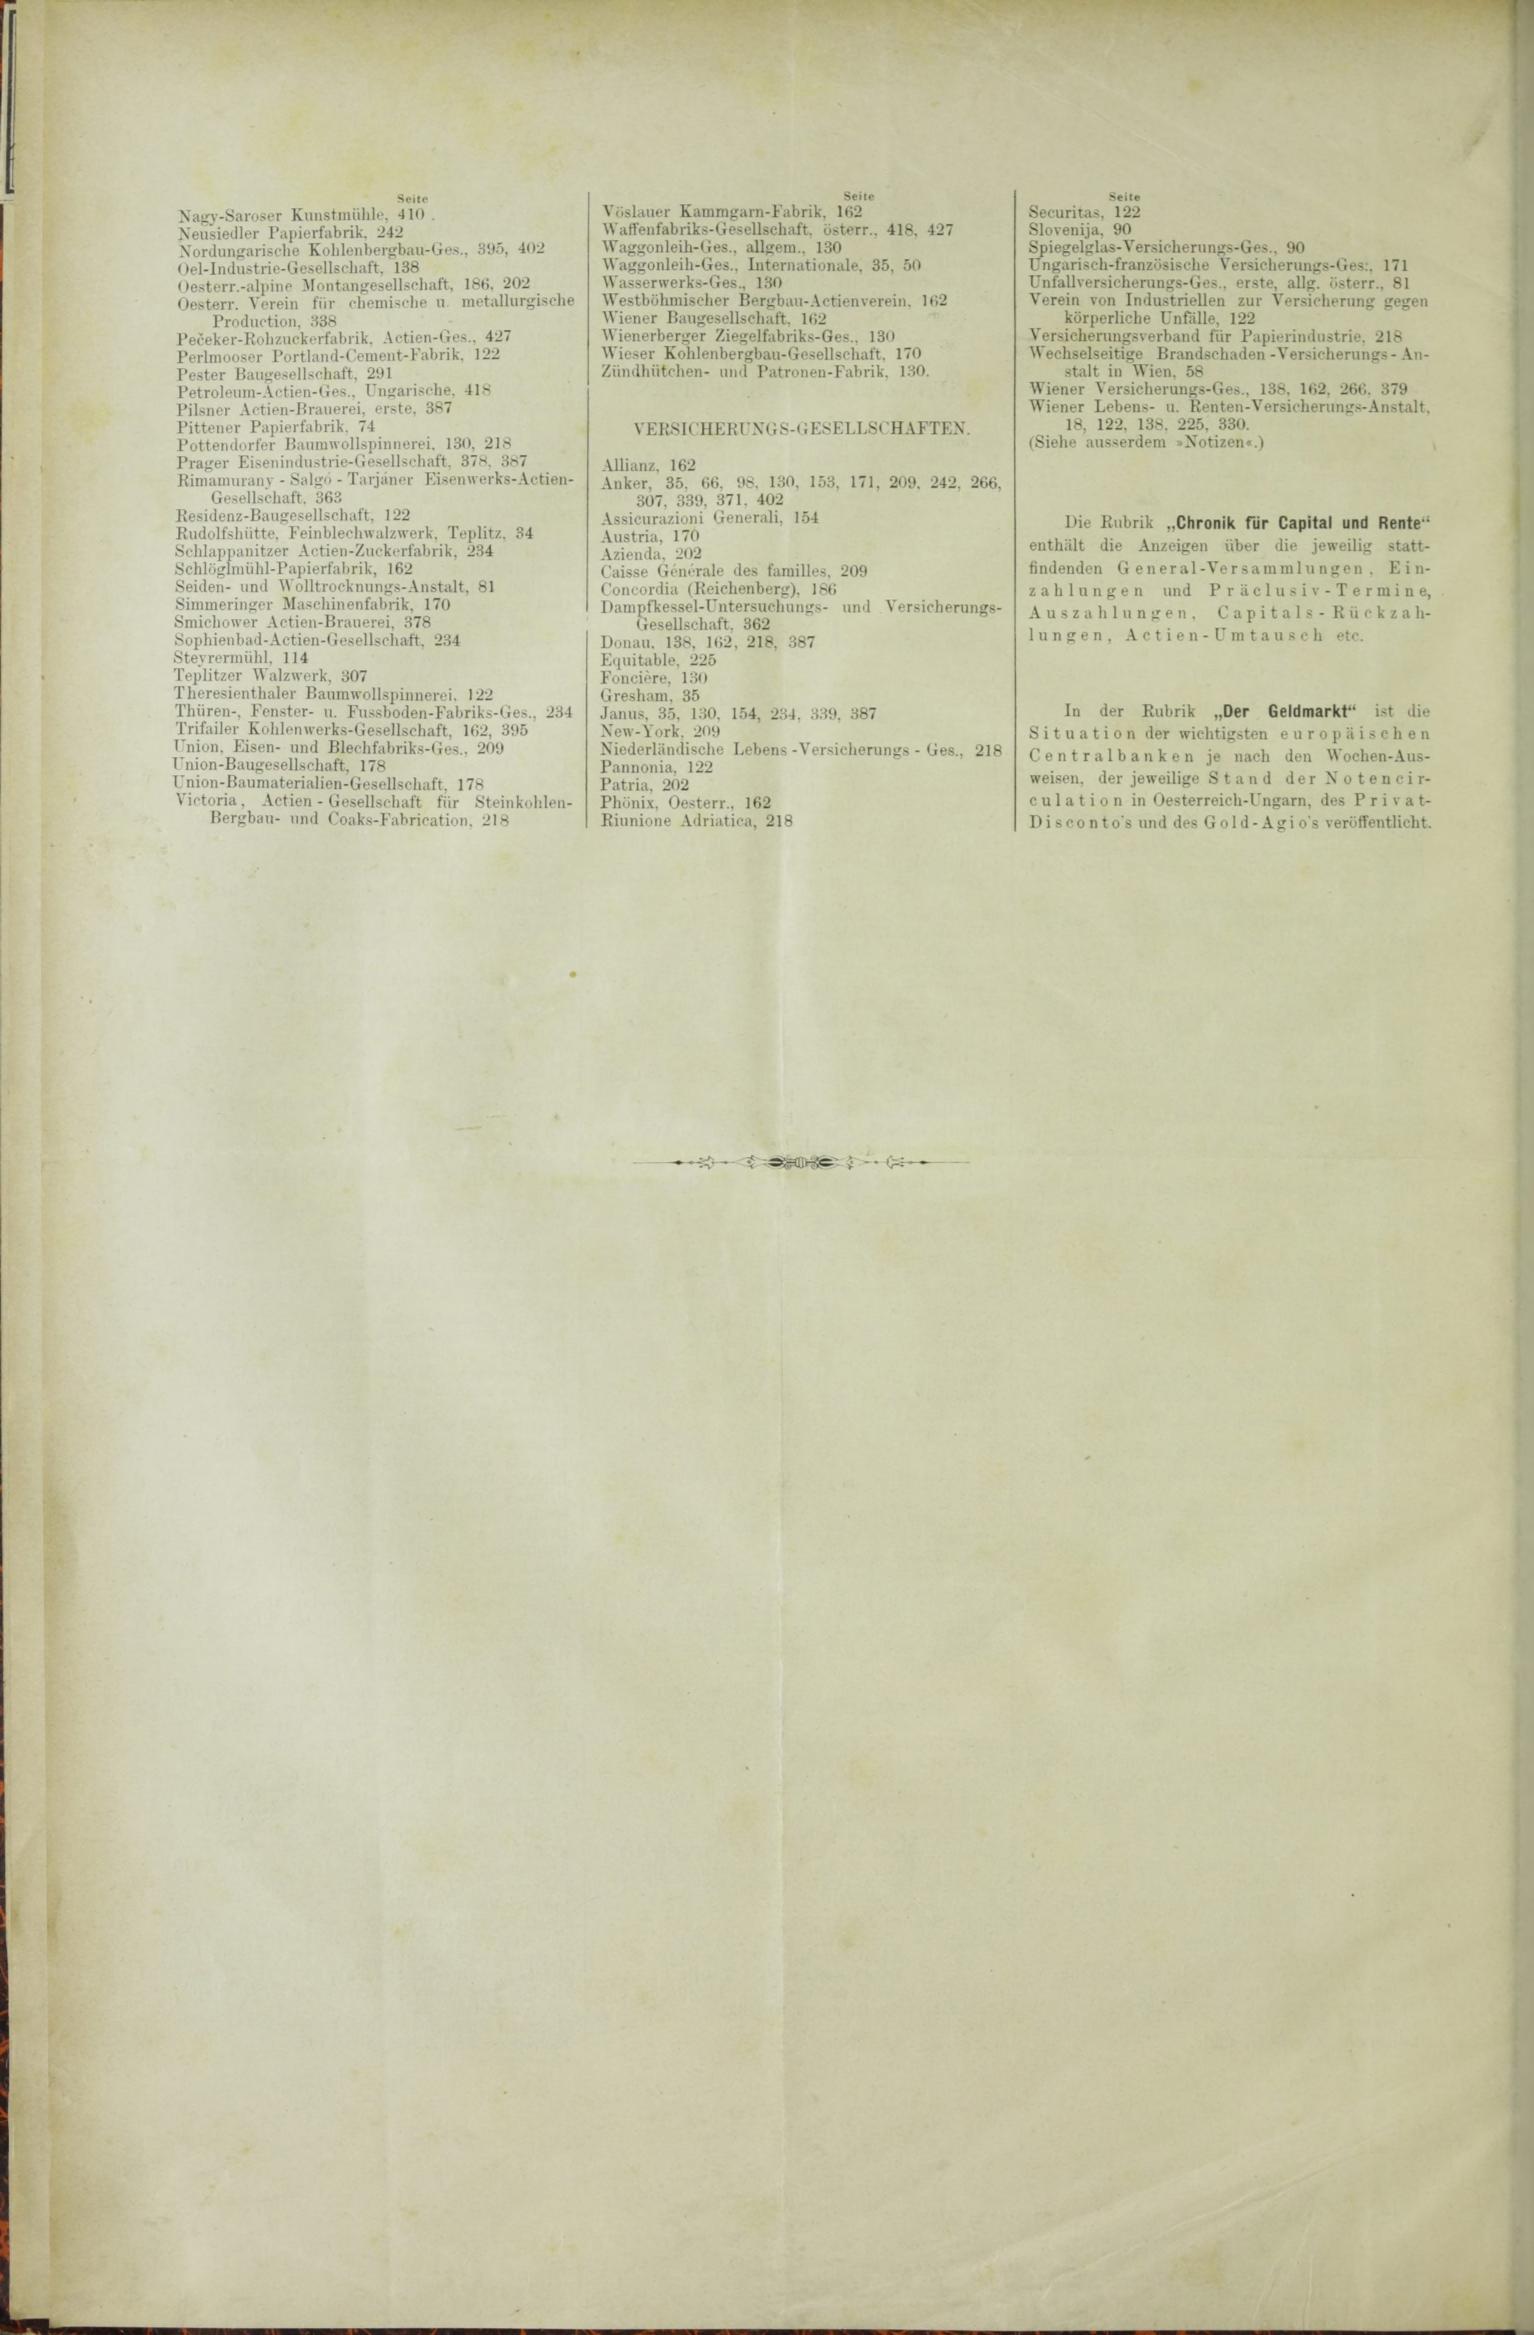 Der Tresor 07.05.1885 - Seite 12